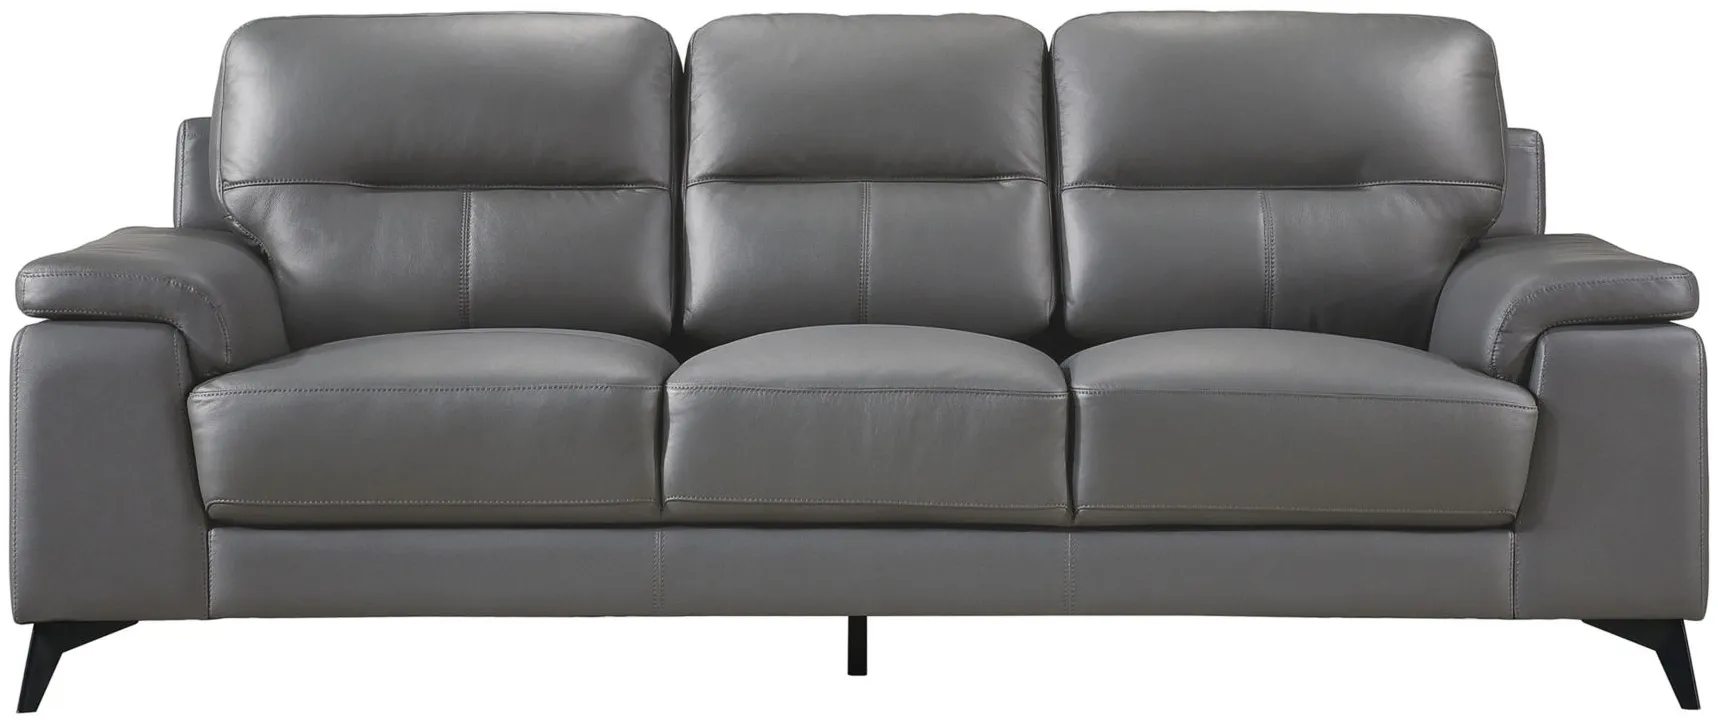 Selles Sofa in Dark Gray by Homelegance